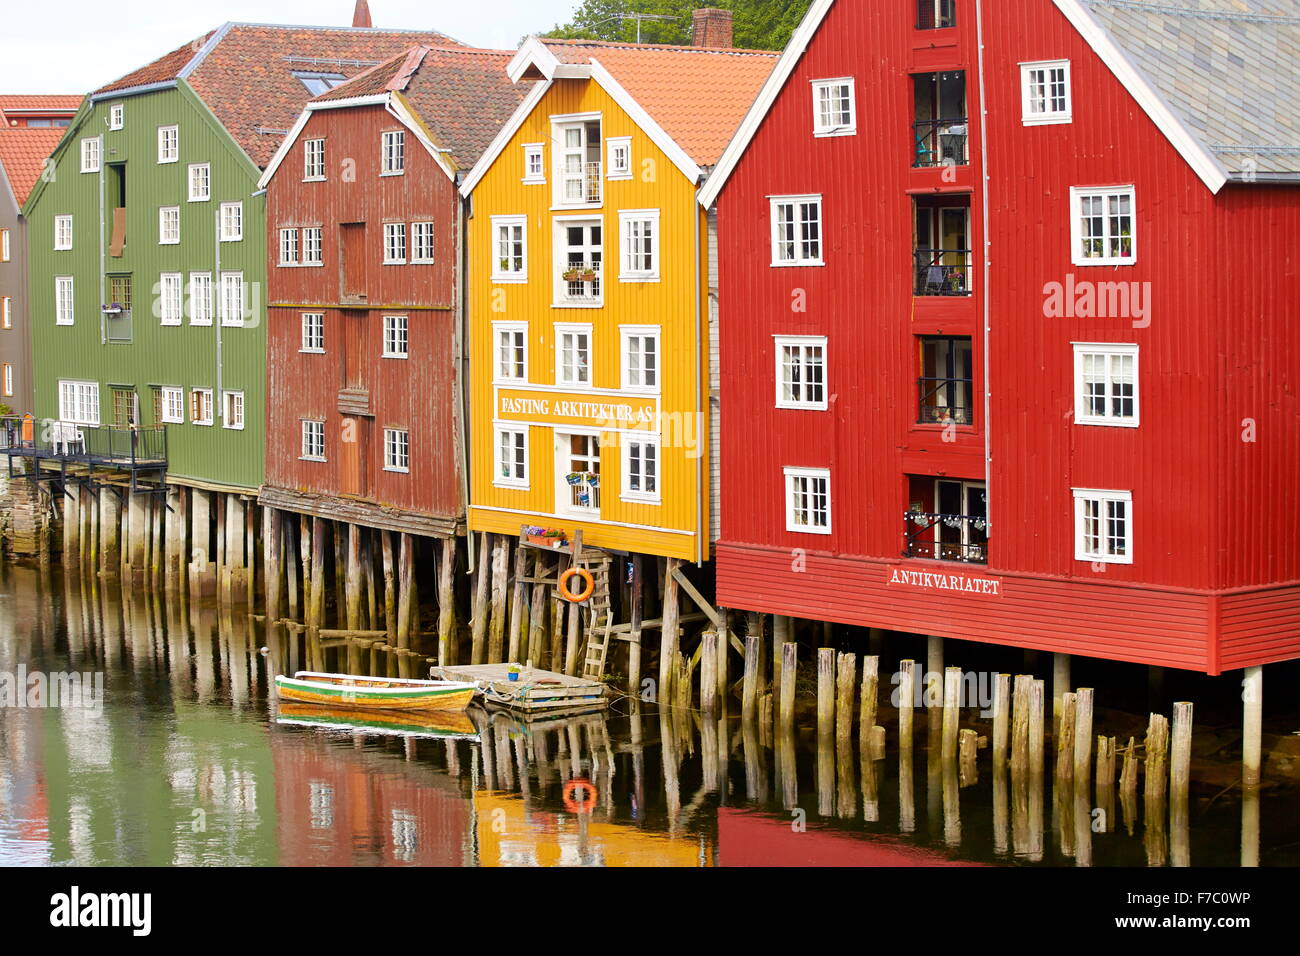 Historique colorés des maisons sur pilotis à Trondheim, Norvège Banque D'Images